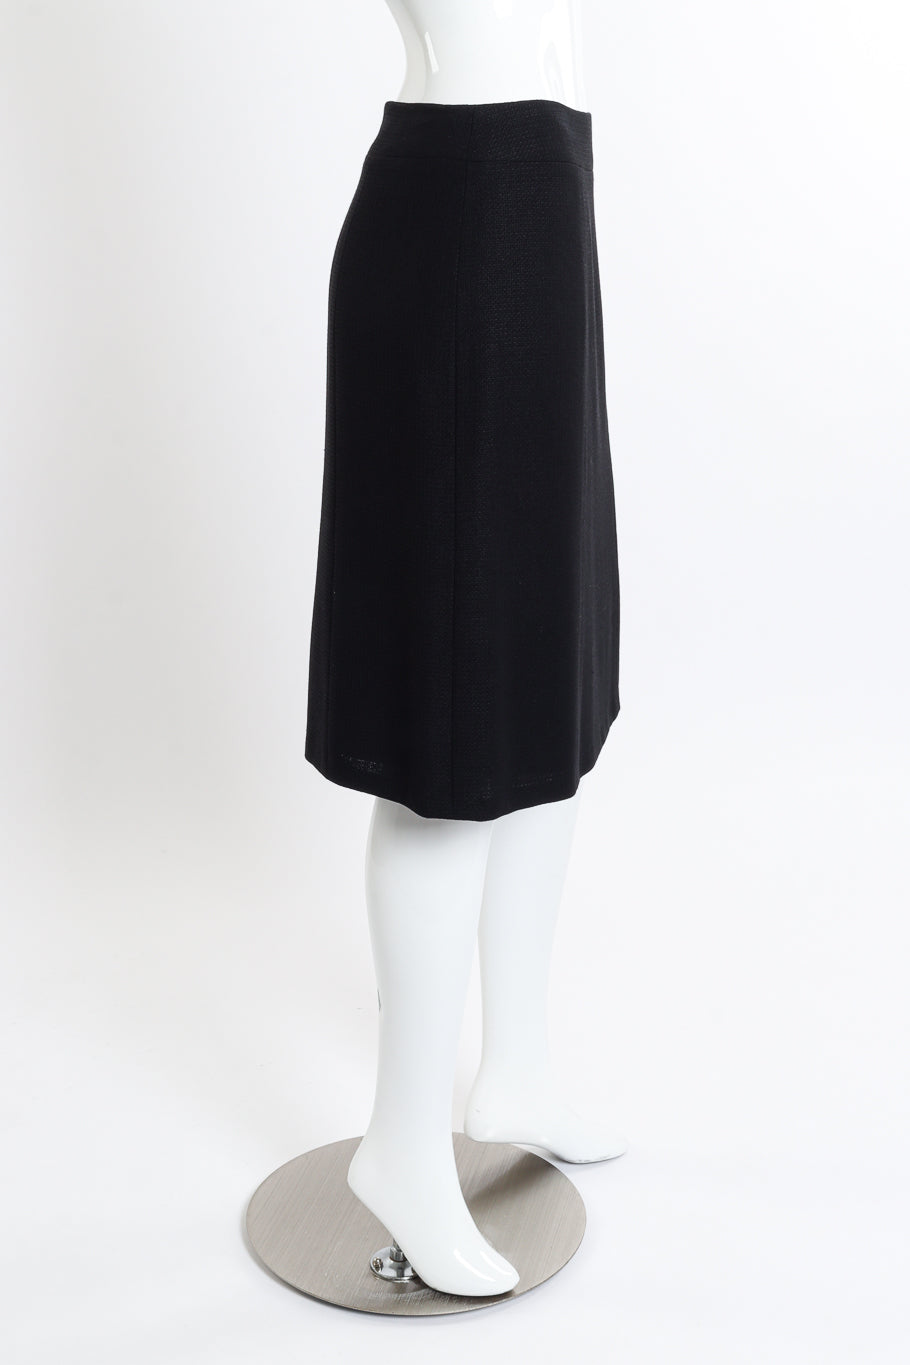 Chanel 2007C S/S Peplum Skirt Suit skirt side on mannequin @recessla